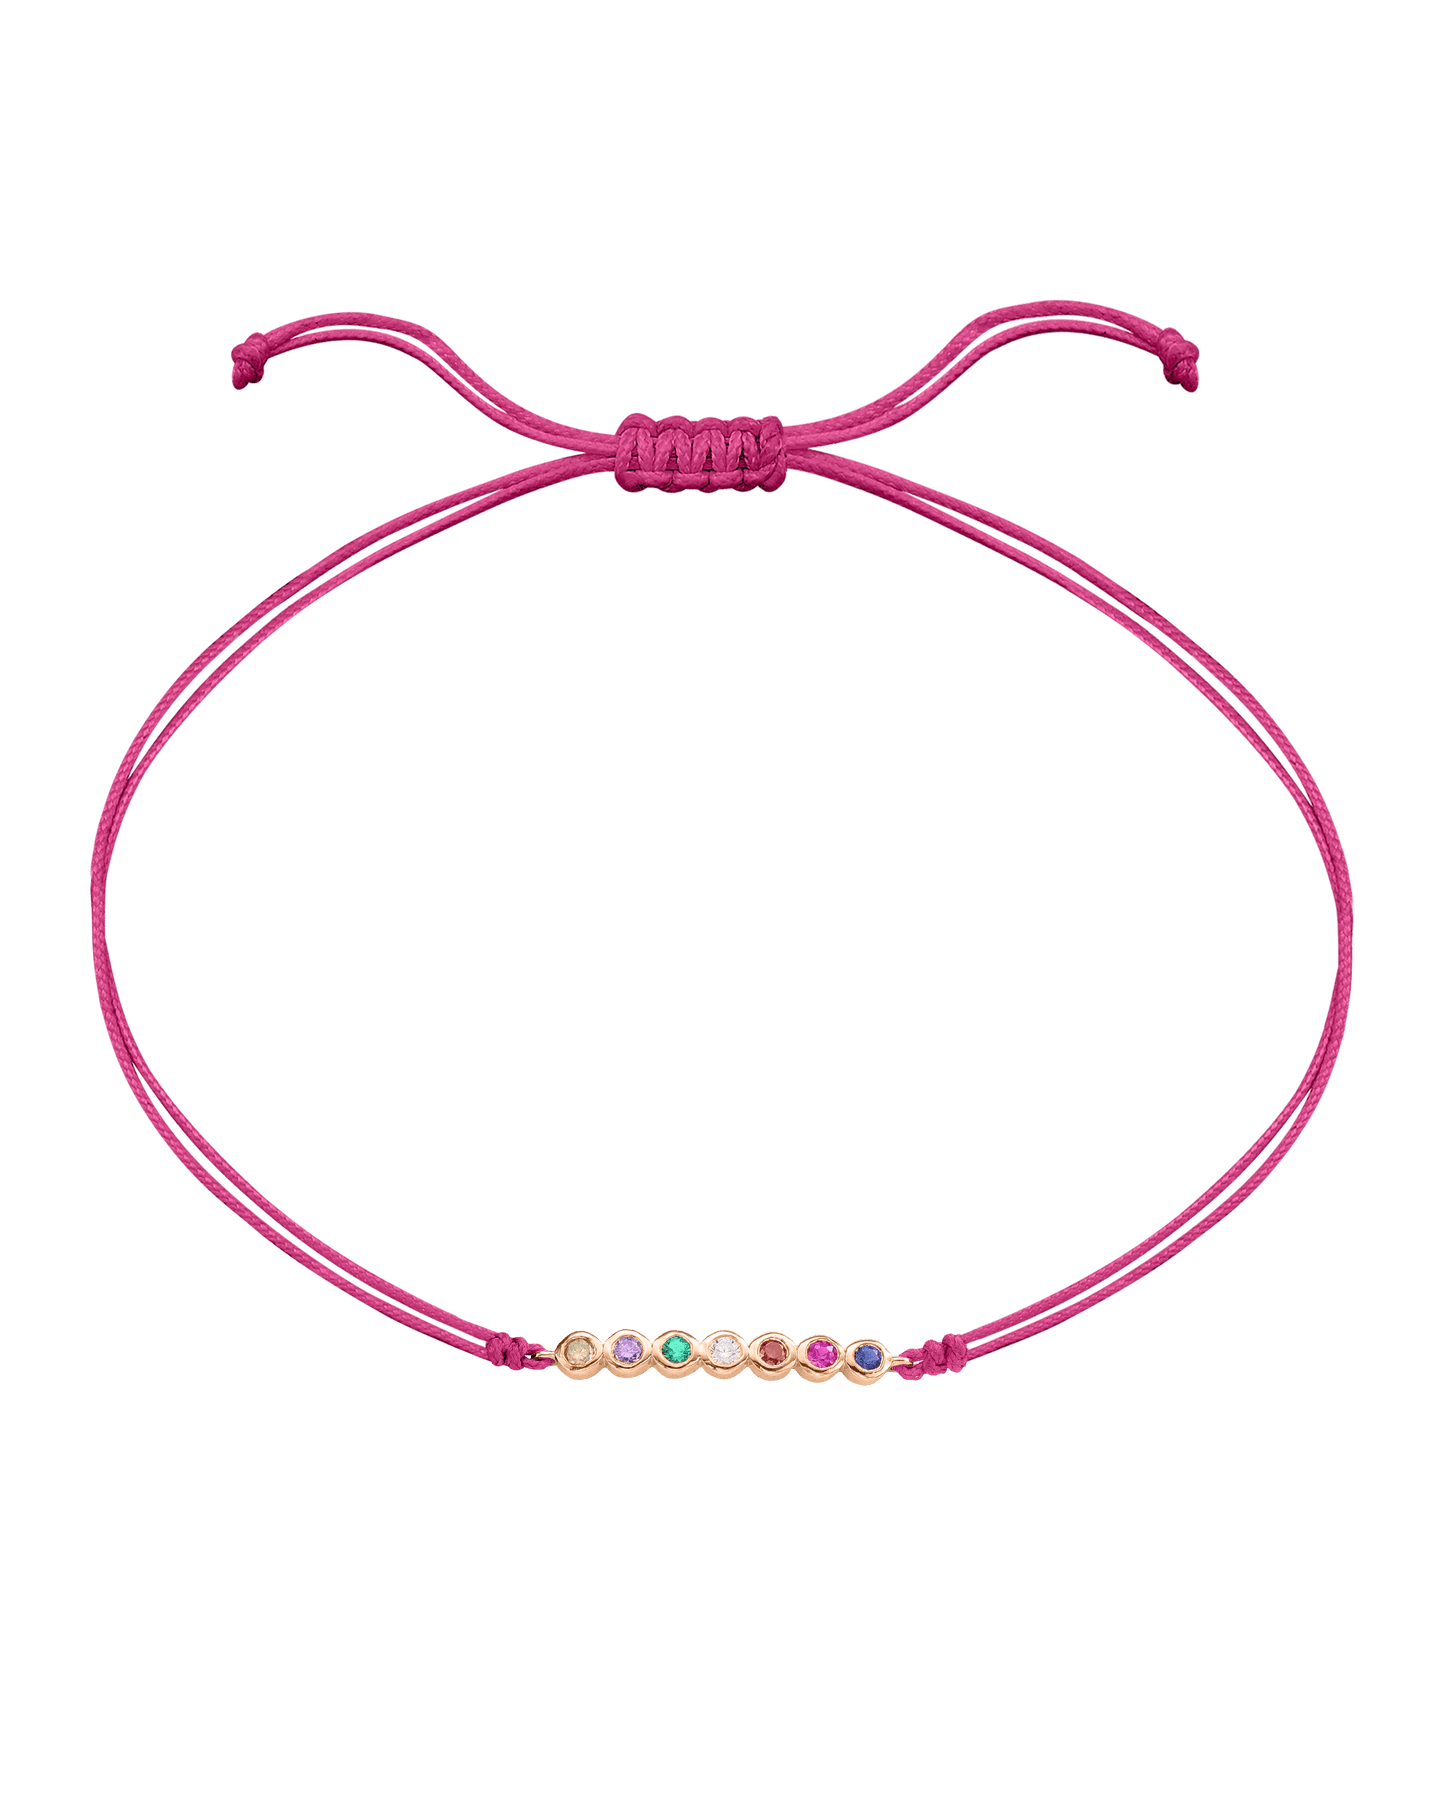 The Birthstones Bar Bracelet - 14K Rose Gold Bracelet 14K Solid Gold Pink 2 